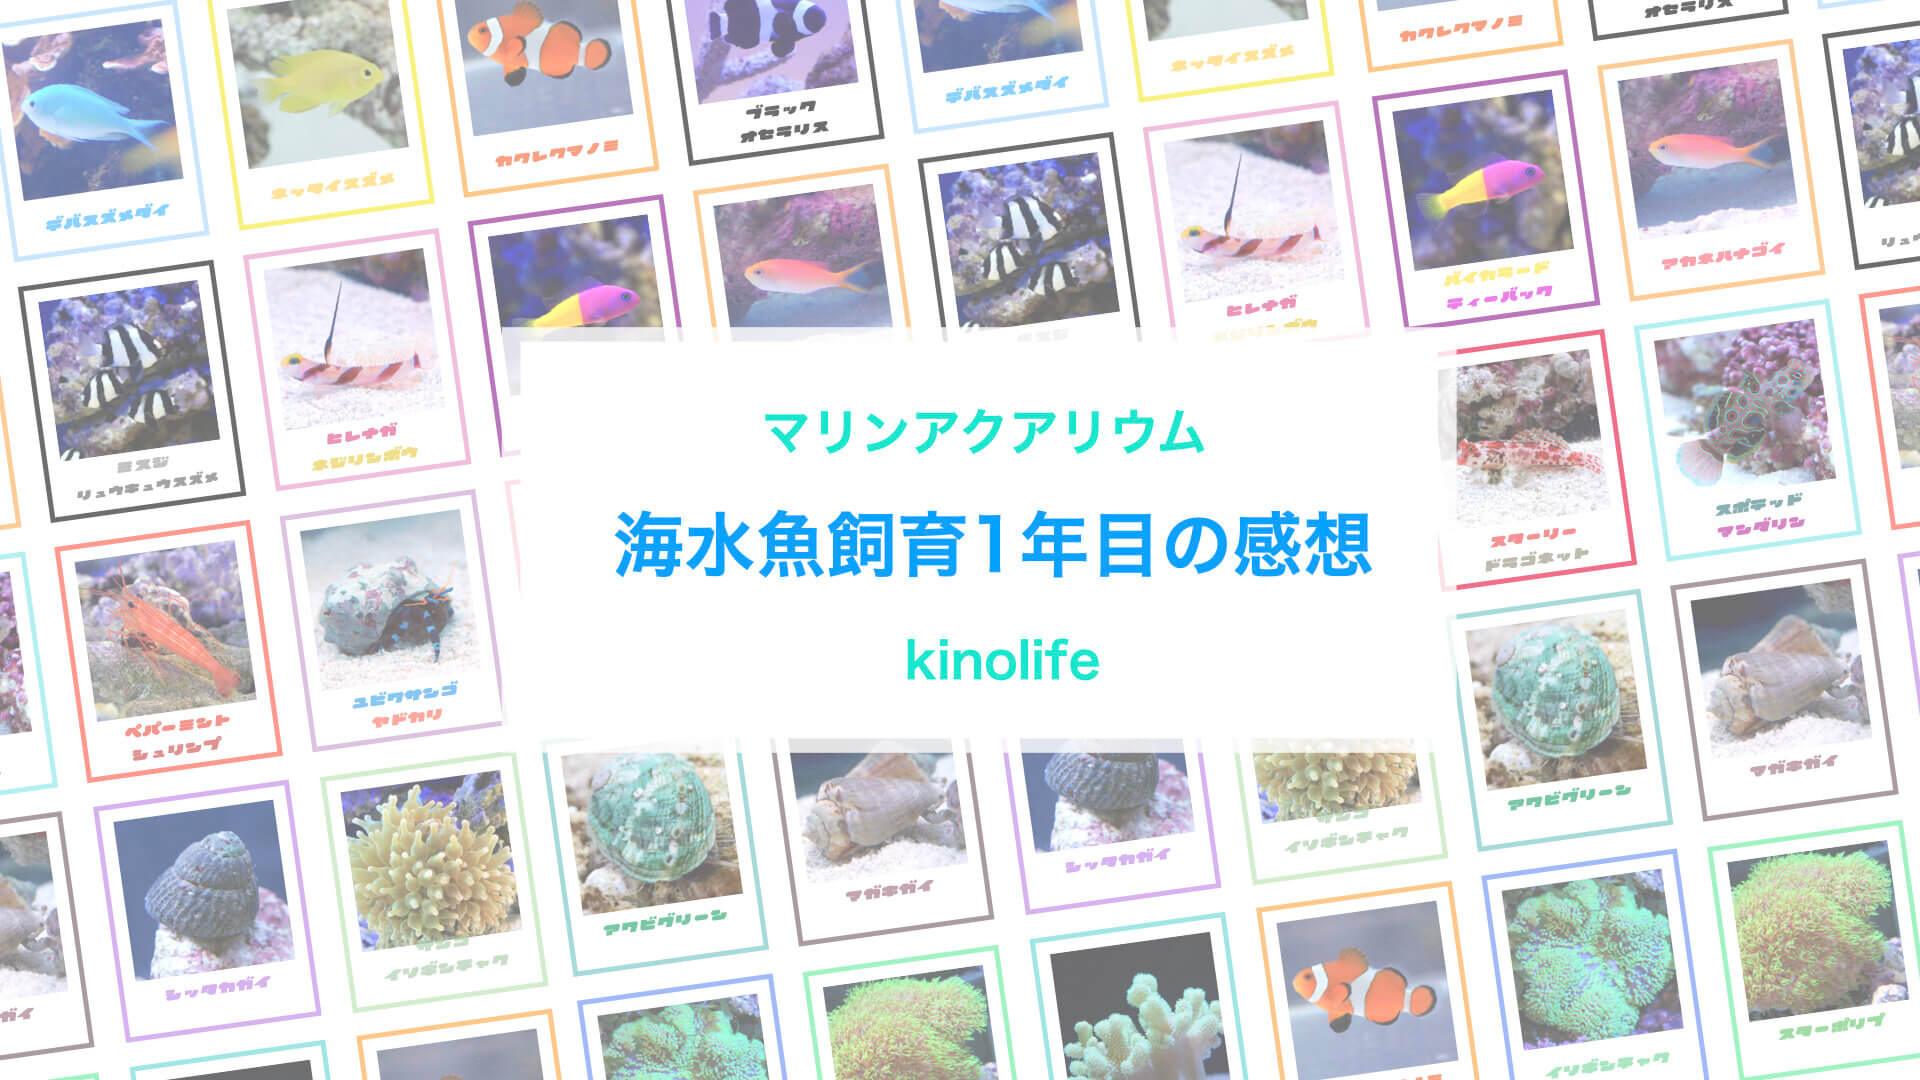 アクアリウム初心者が実際に海水魚を1年間飼育してわかったこと Kinolife キノライフ